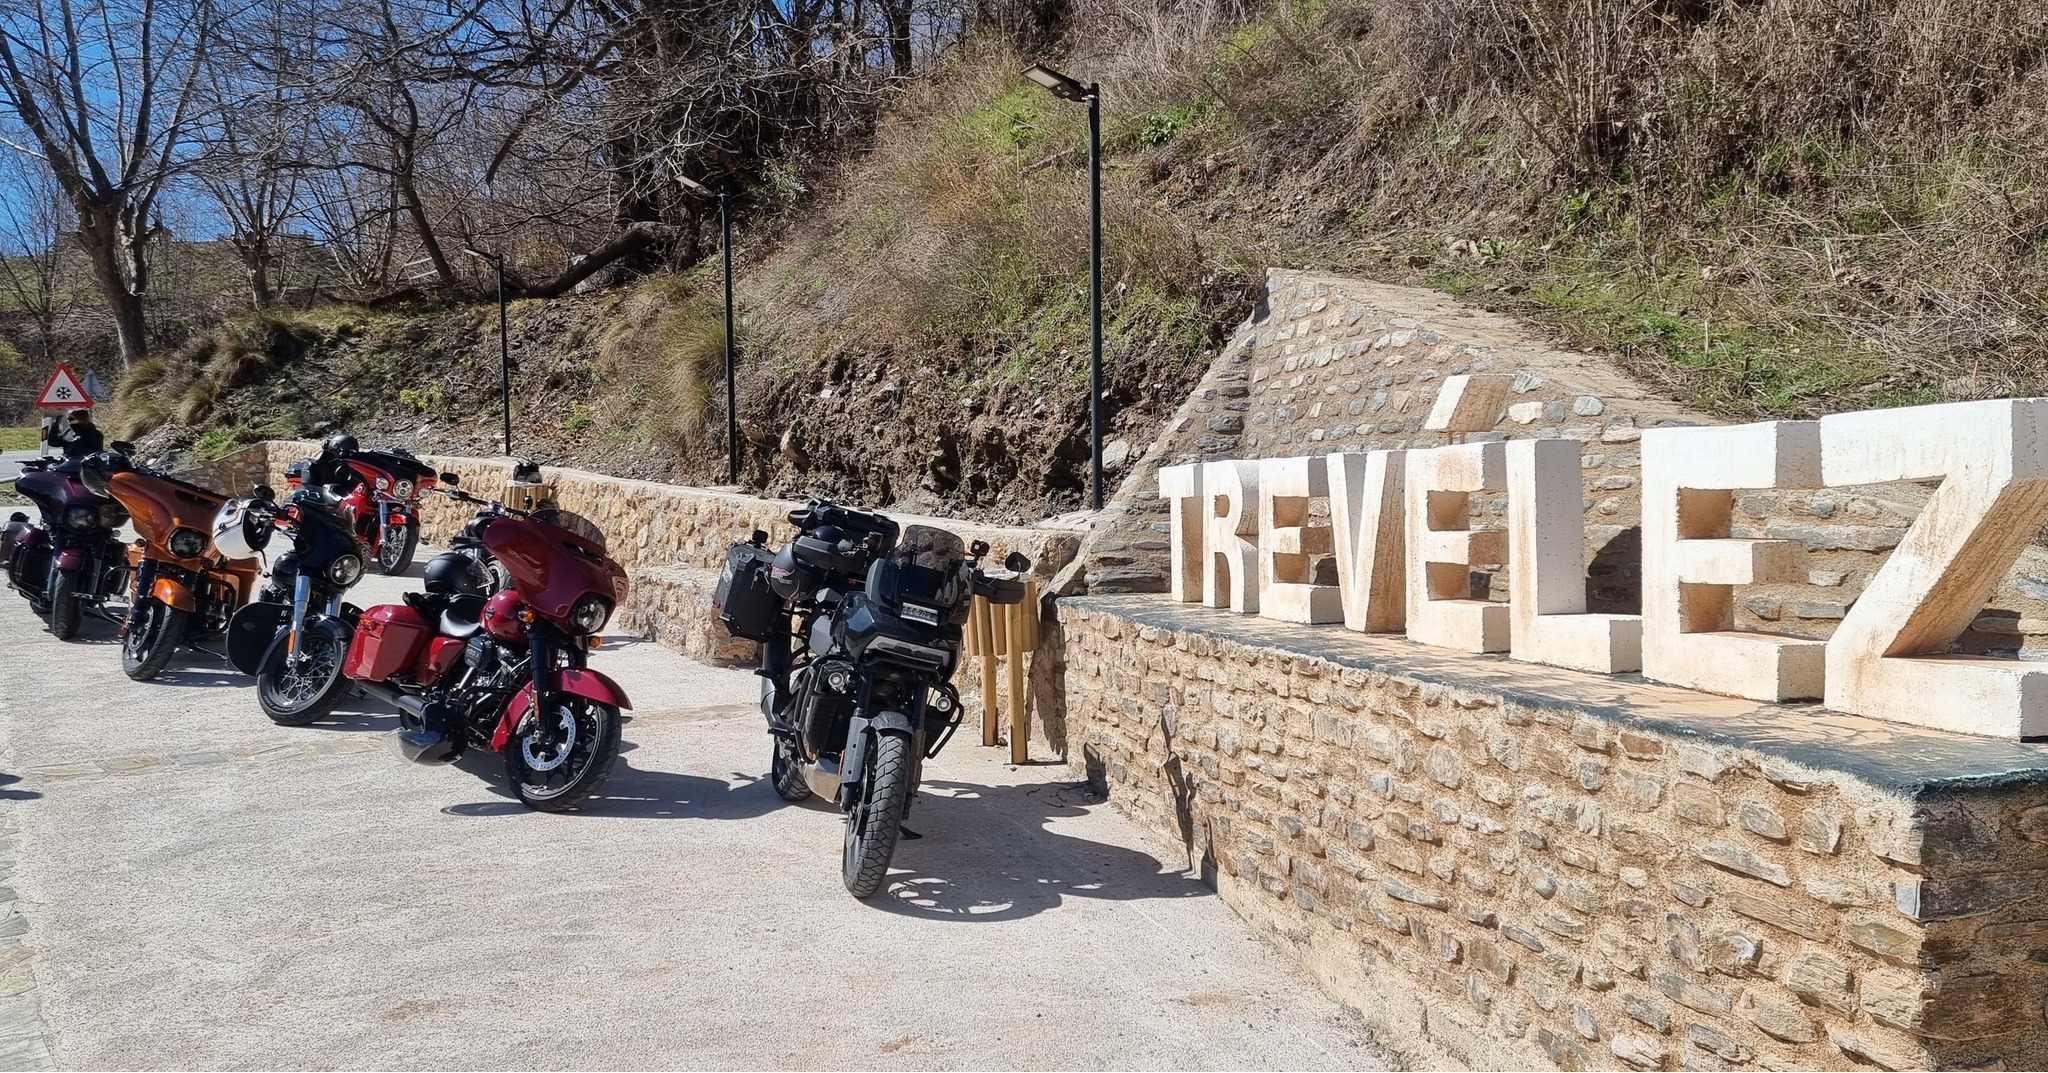 Trevelez - Besuch bei der Tour am sechsten Trag der Andalusien Bikerreise 2022